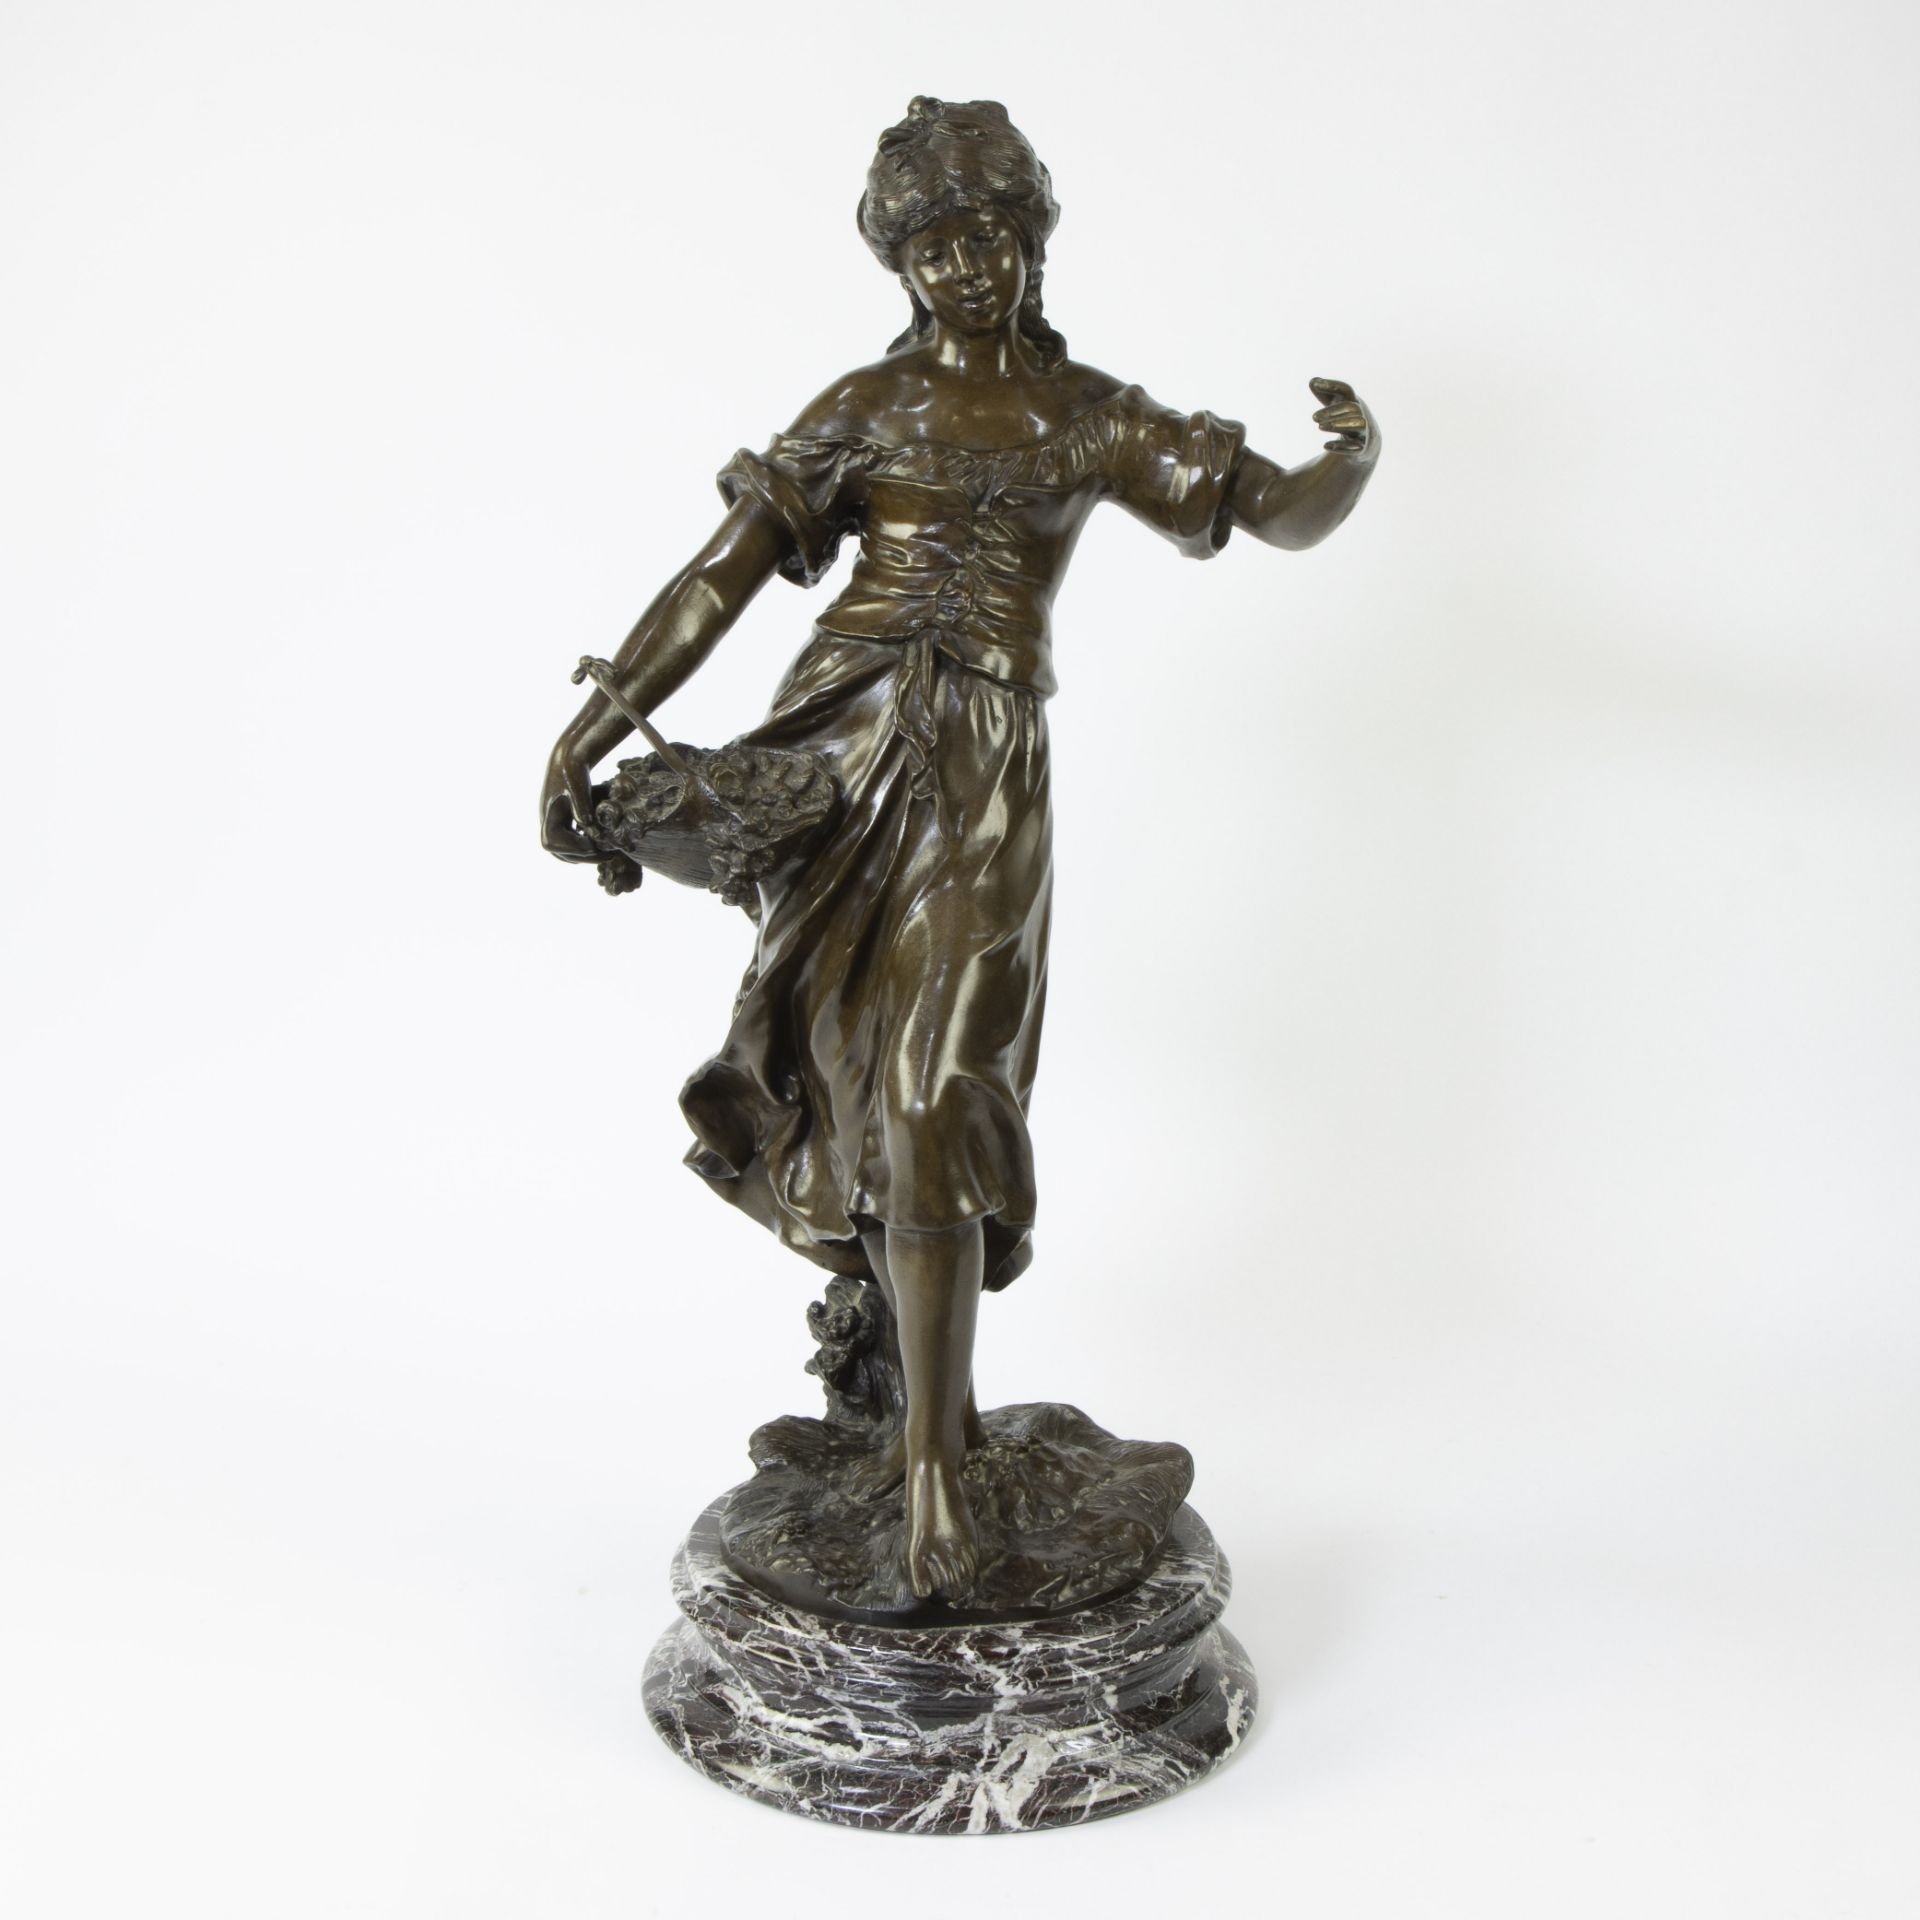 Auguste MOREAU (1834-1917), bronze Jeune fille, signed